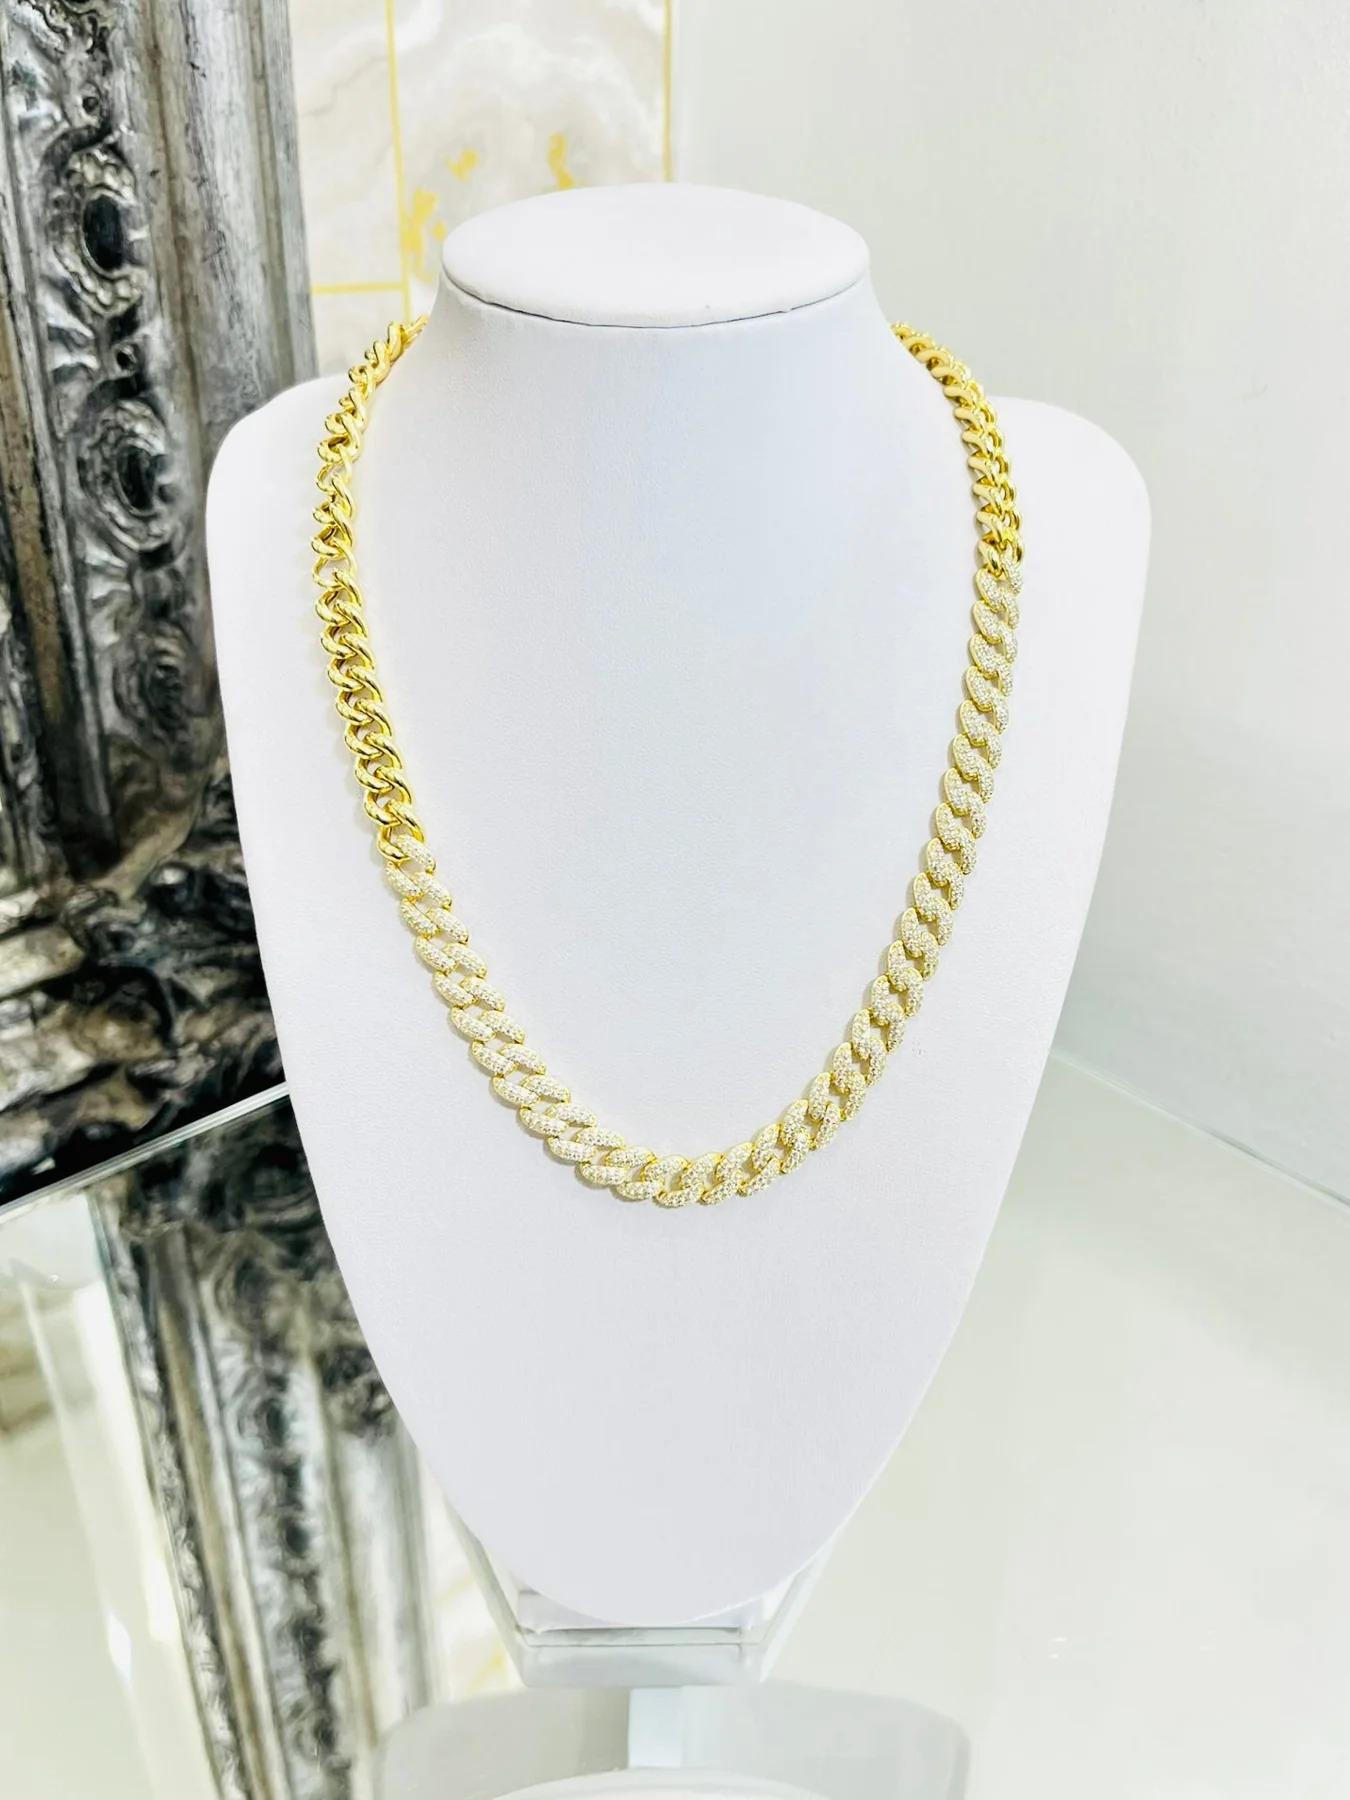 Rachel Koen 7.43Cttw Diamond Paper Clip Link Chain Necklace | Rachel Koen |  Buy at TrueFacet